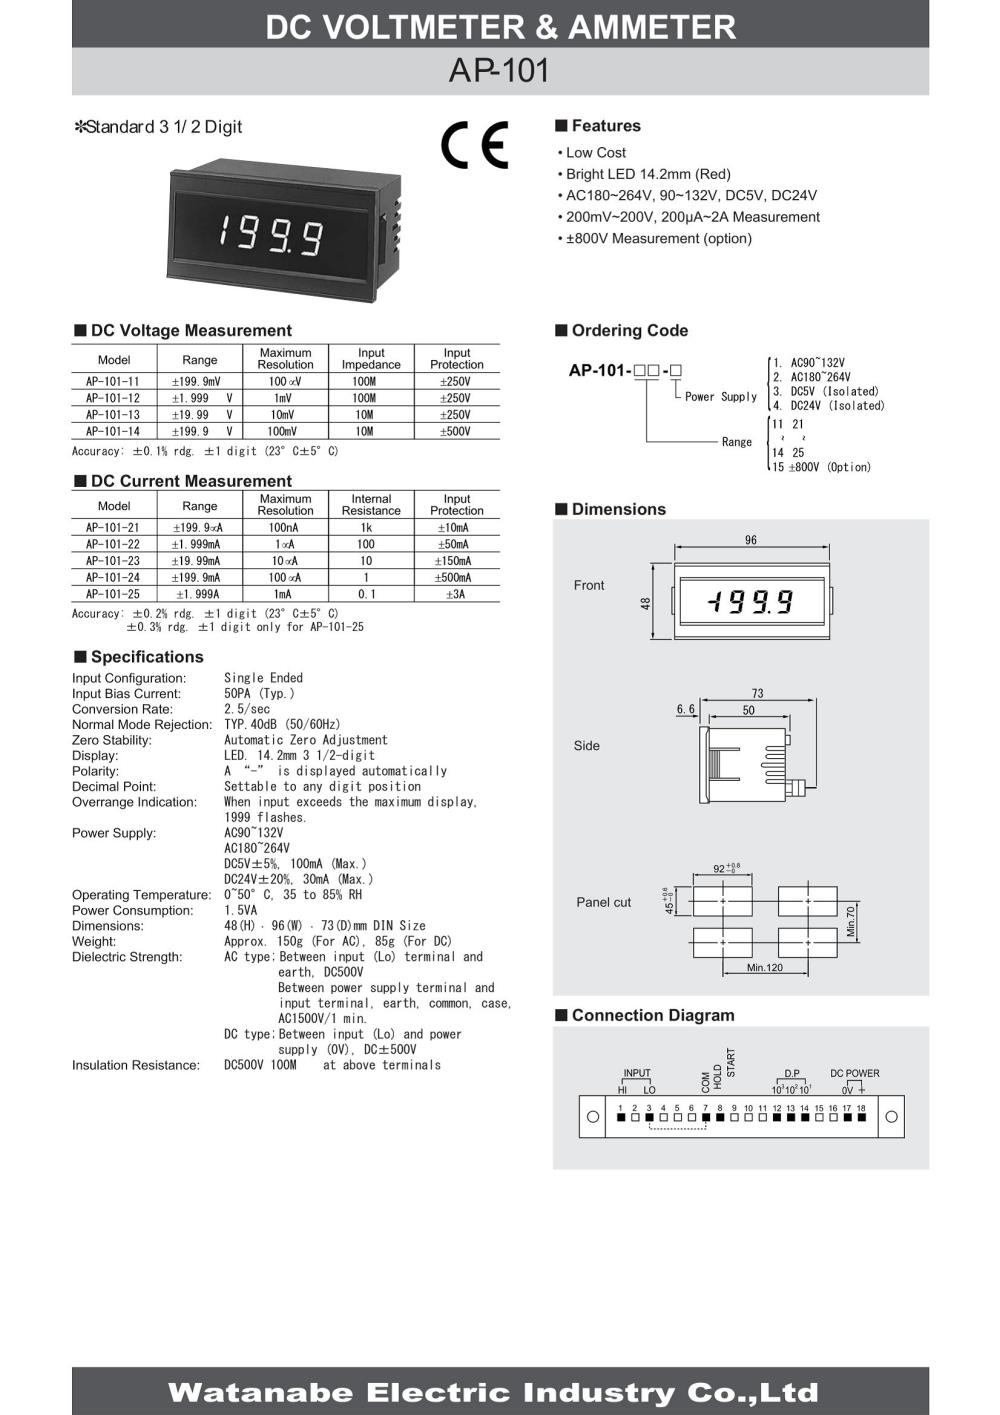 WATANABE Digital Panel Meter AP-101-22 Series